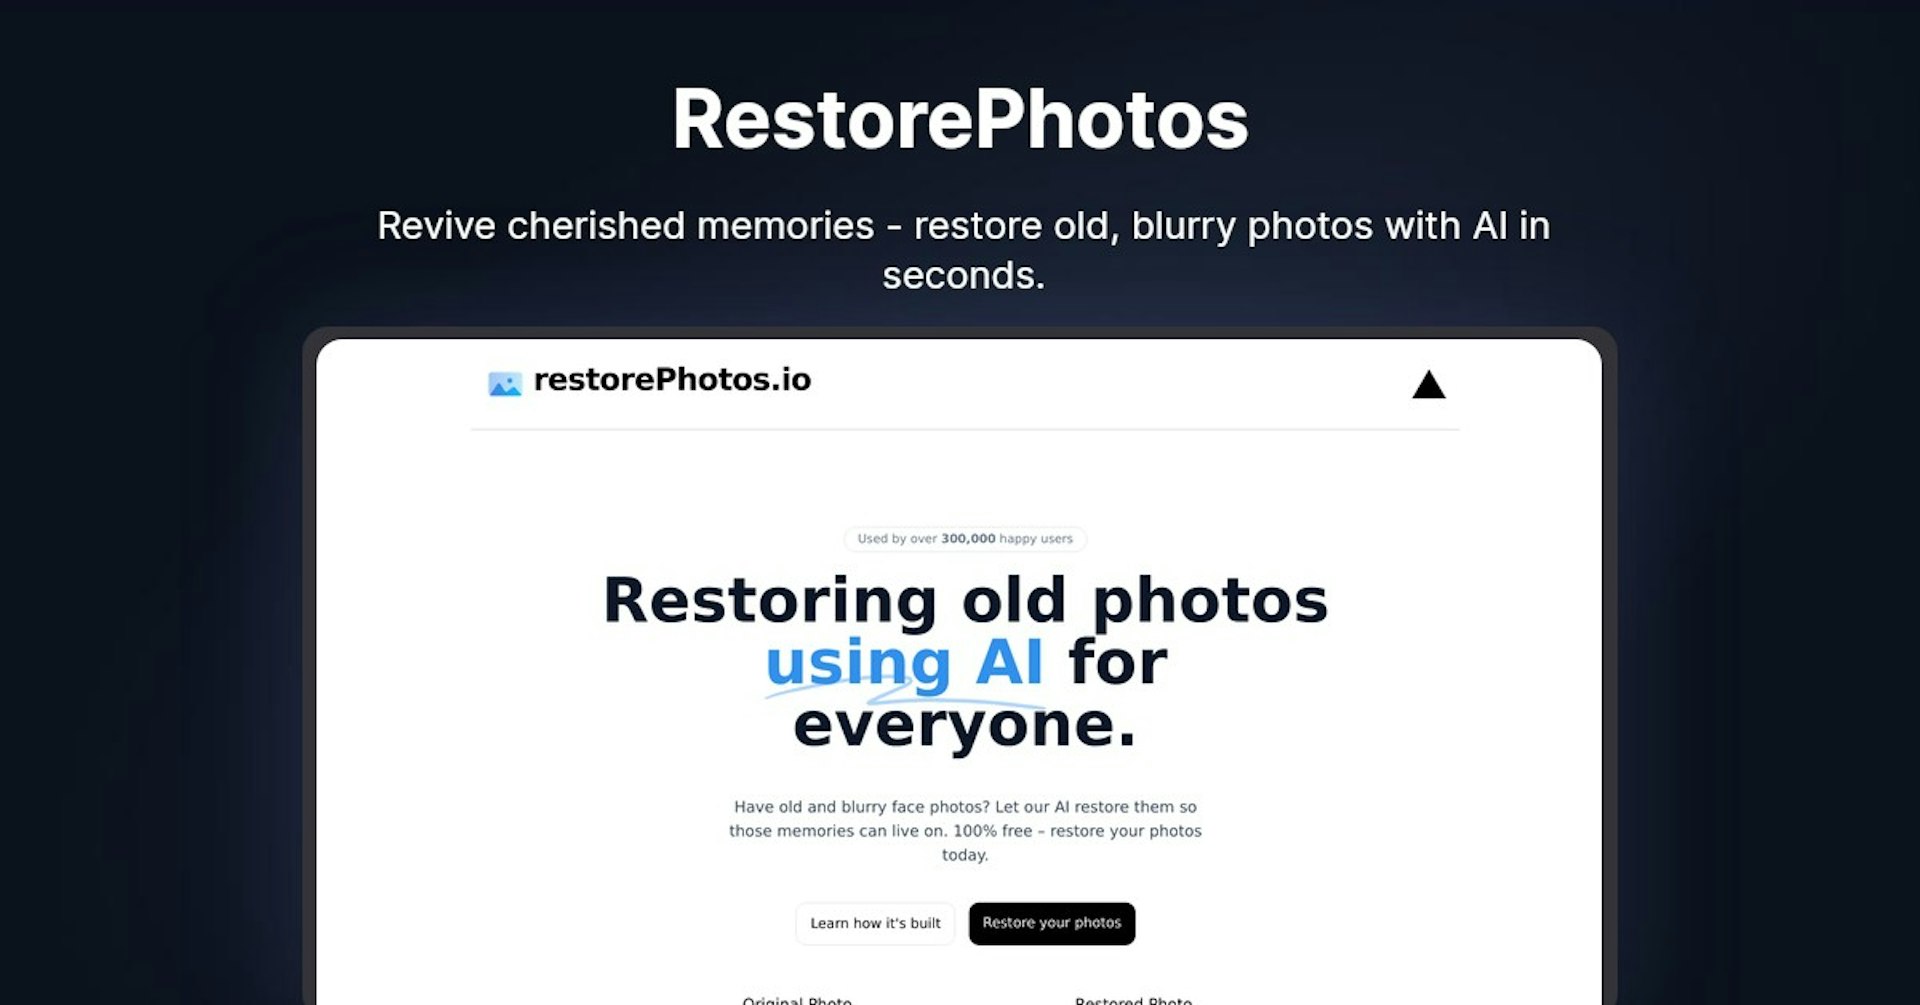 restorePhotos